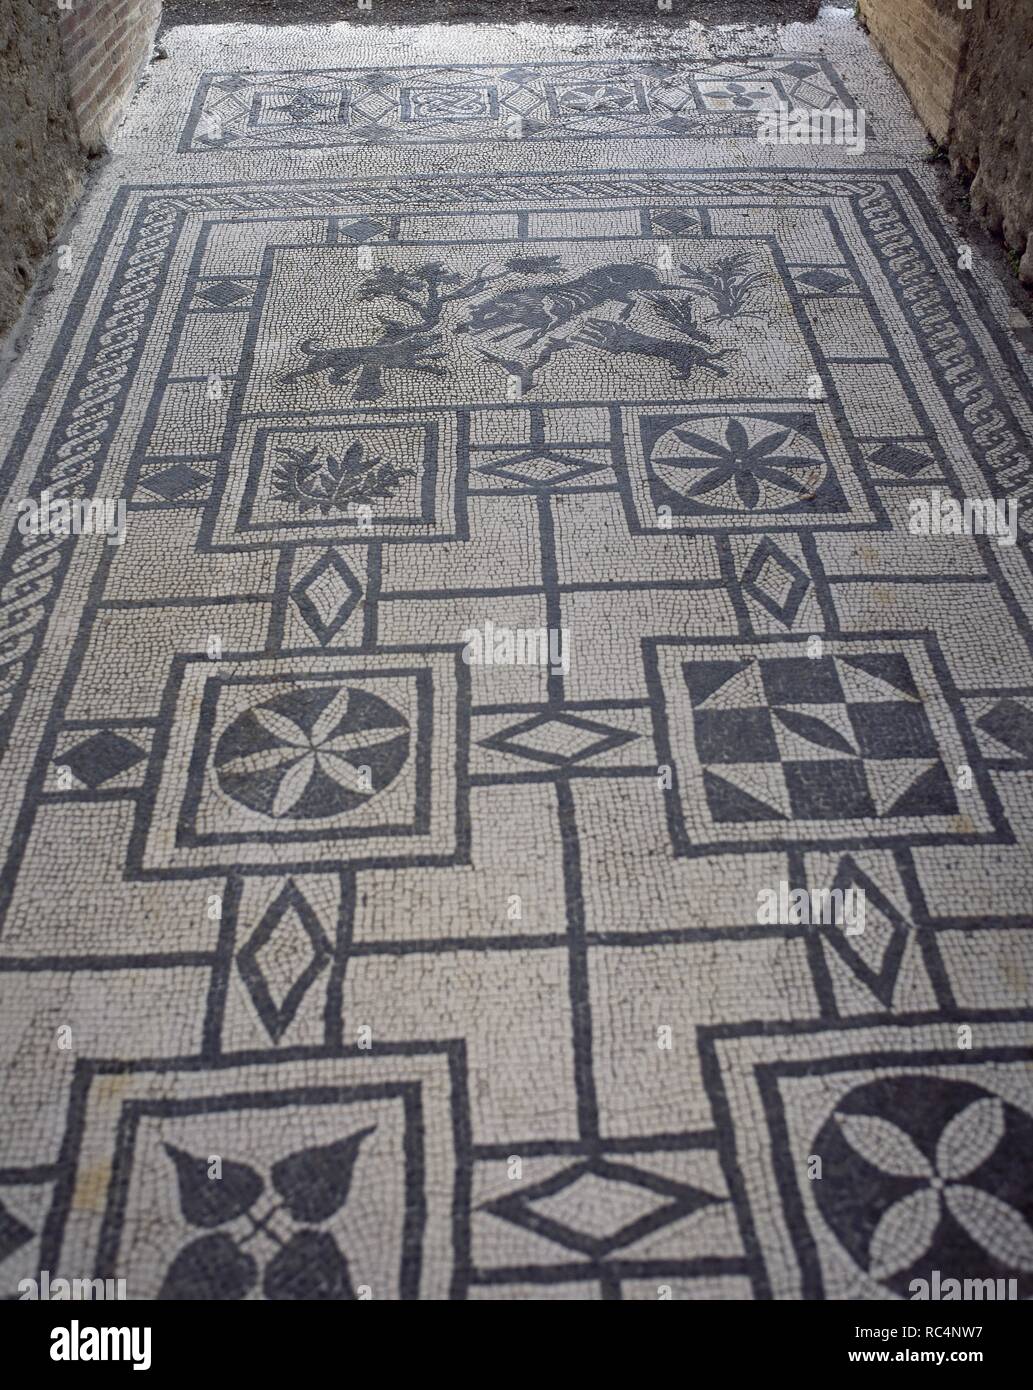 ARTE ROMANO. ITALIA. MOSAICO de teselas blancas y negras que decoraba el pavimento del 'ATRIUM' (Atrio) de una 'DOMUS' pompeyana. La representación central es una escena de caza: 'JABALI ATACADO POR PERROS', y el resto son motivos geométricos. CASA DEL JABALI (en la Vía de la Abundancia). POMPEYA. La Campania. Stock Photo